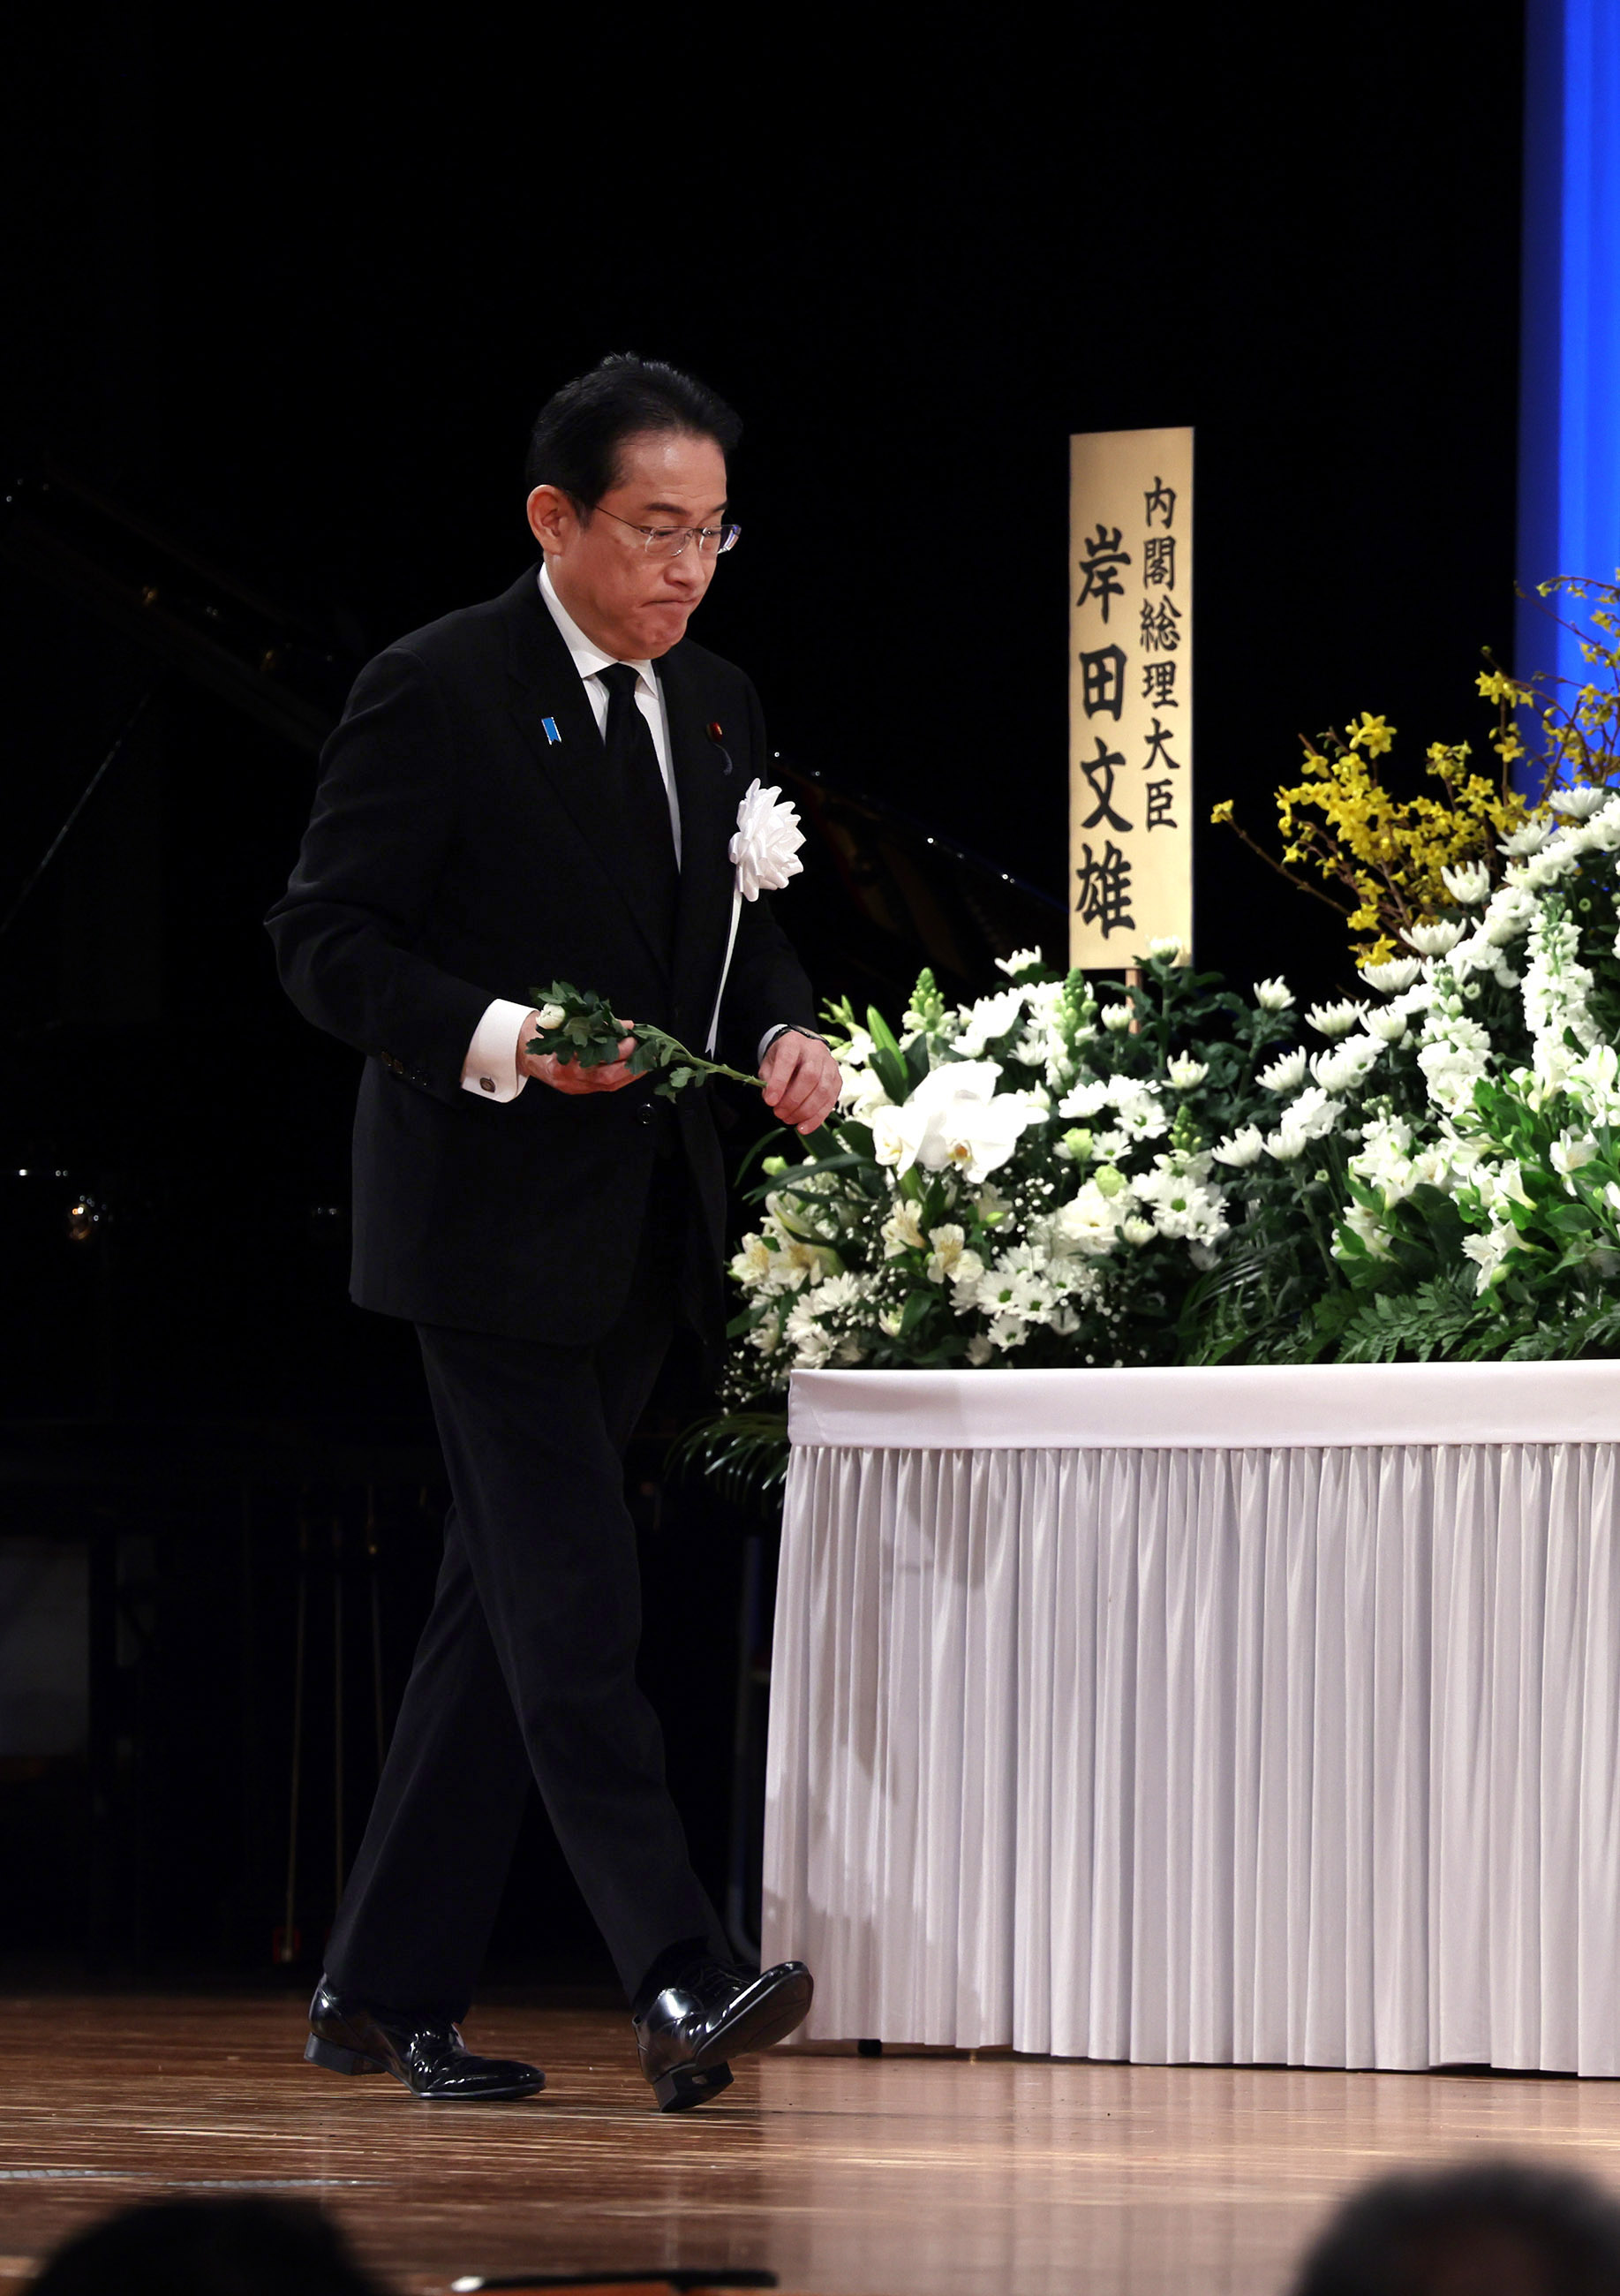 Prime Minister Kishida offering flowers (1)